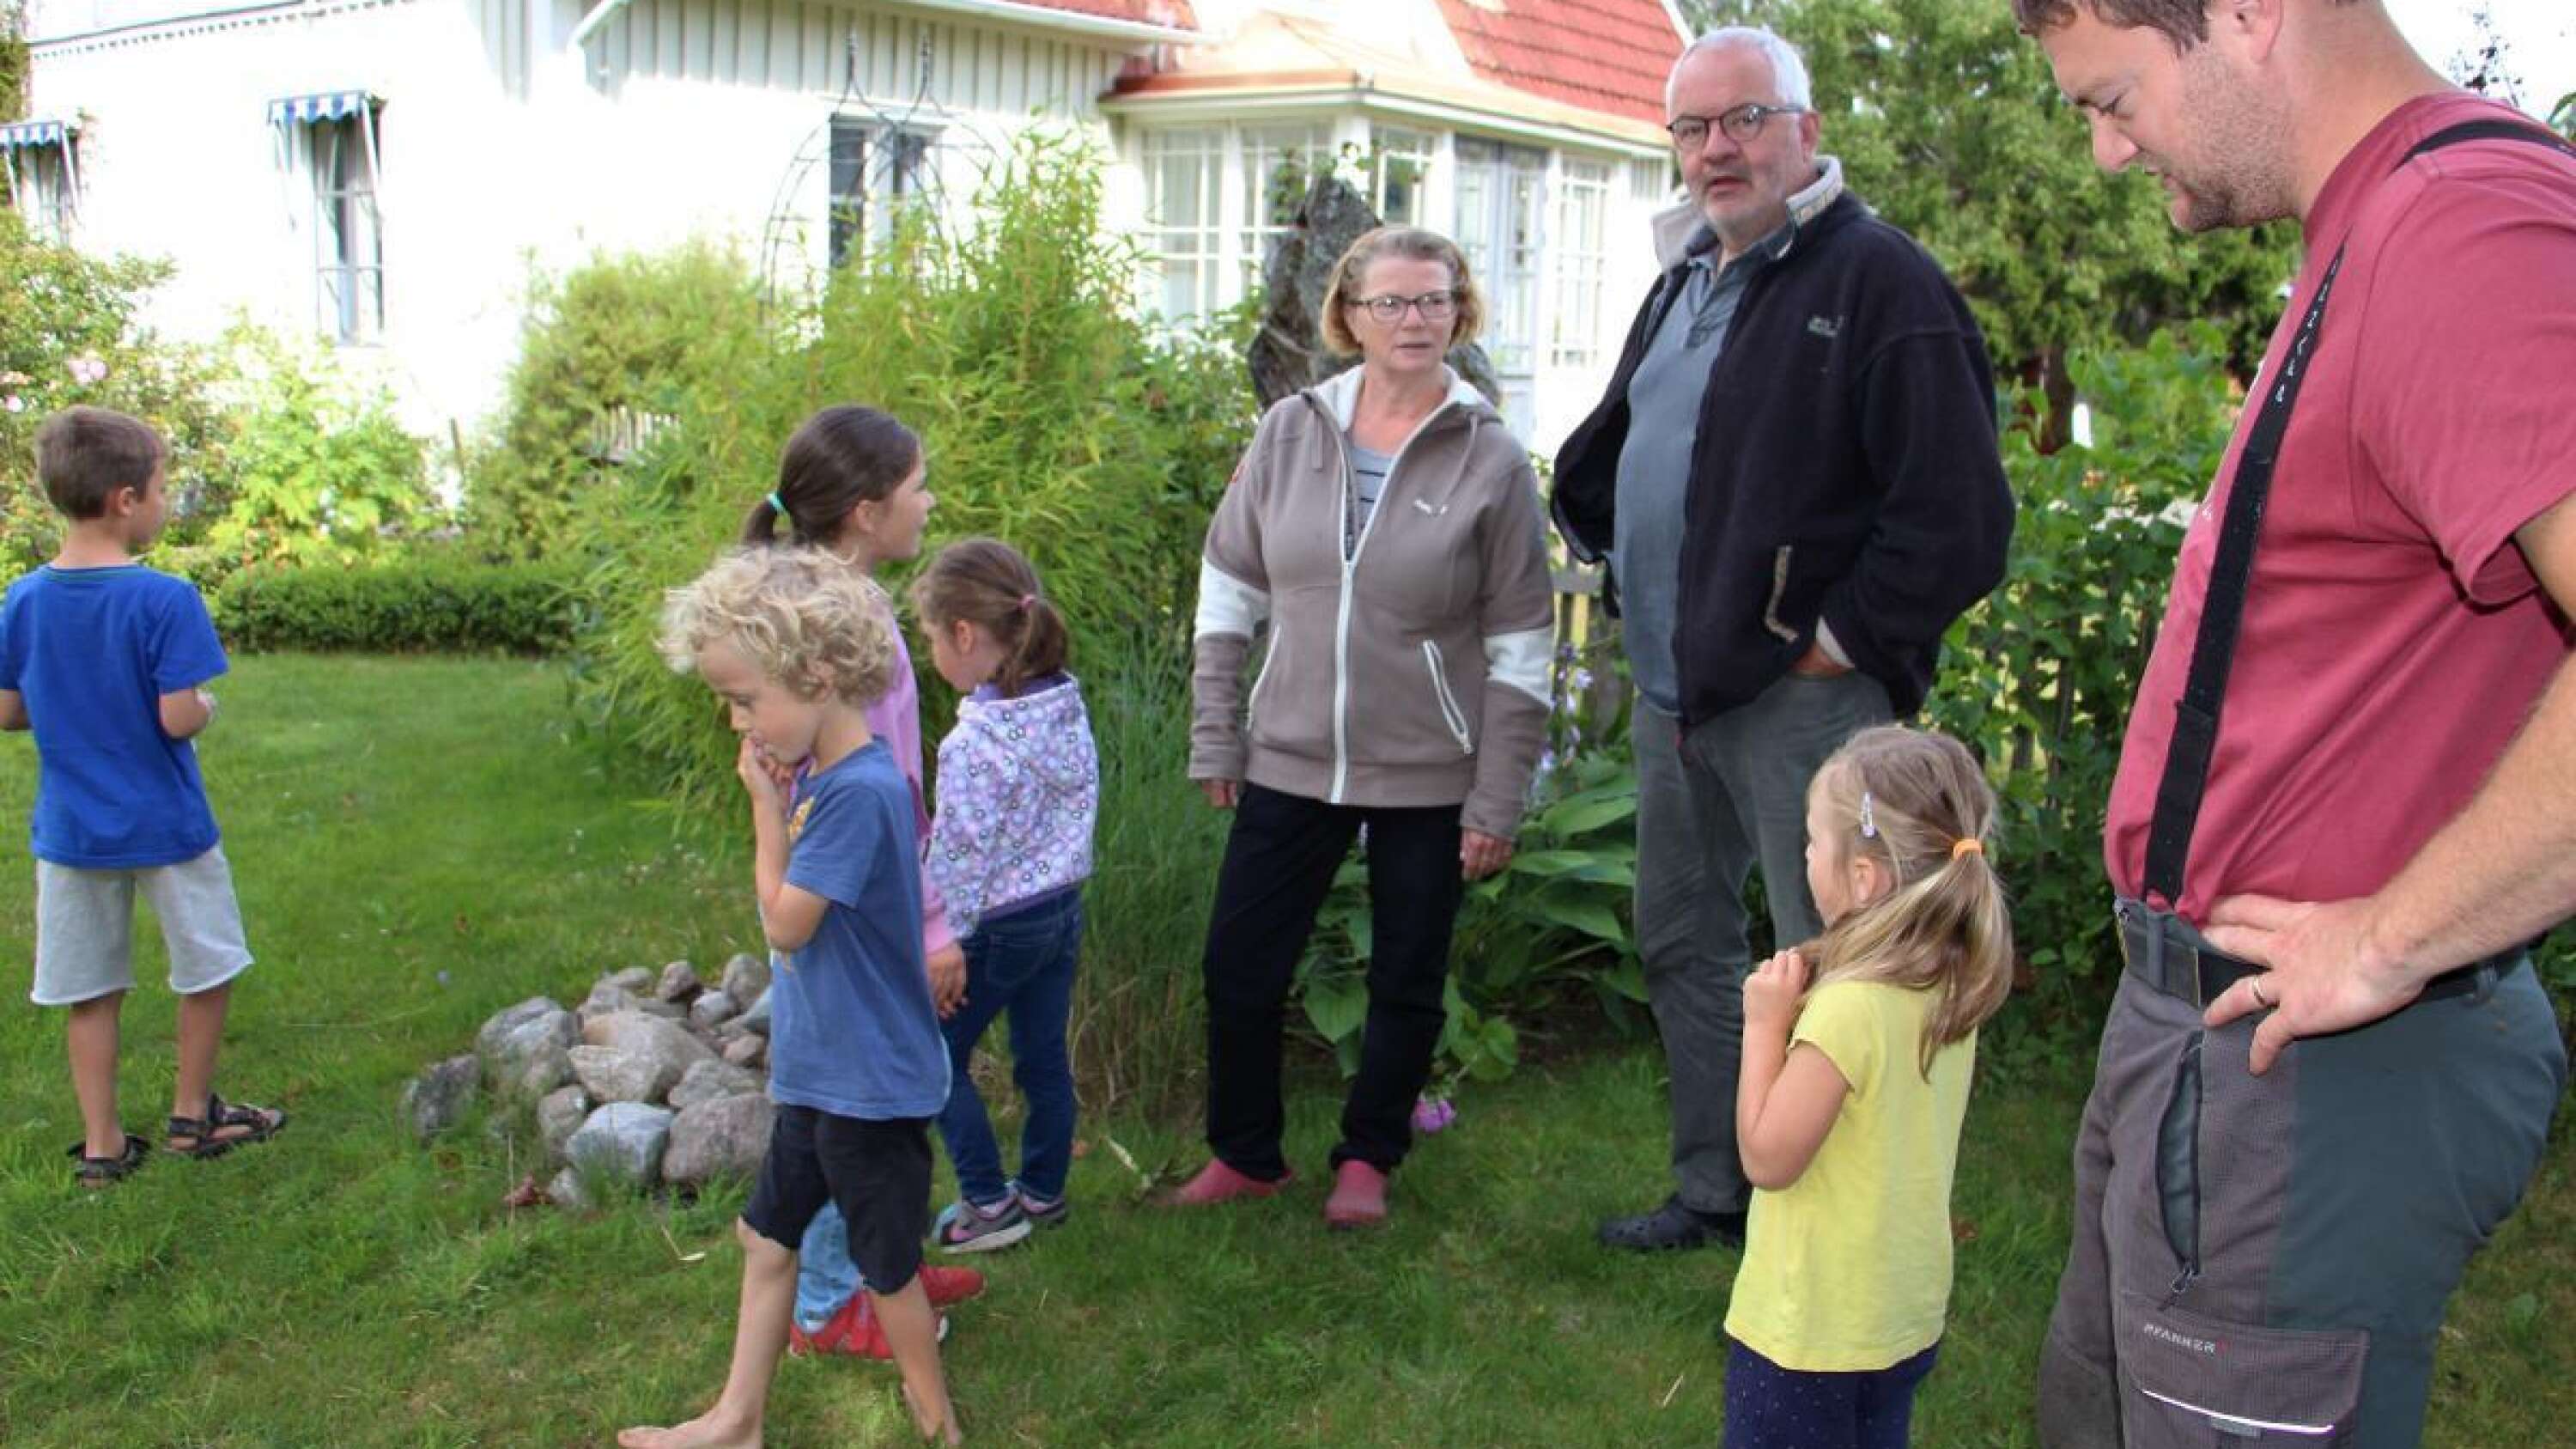 På gården Myrmon i Igelstad bor tre generationer. Simeon Fuchs t.h. och hans föräldrar Susanne och Helmut är alla oroade över inmutningsplanerna.